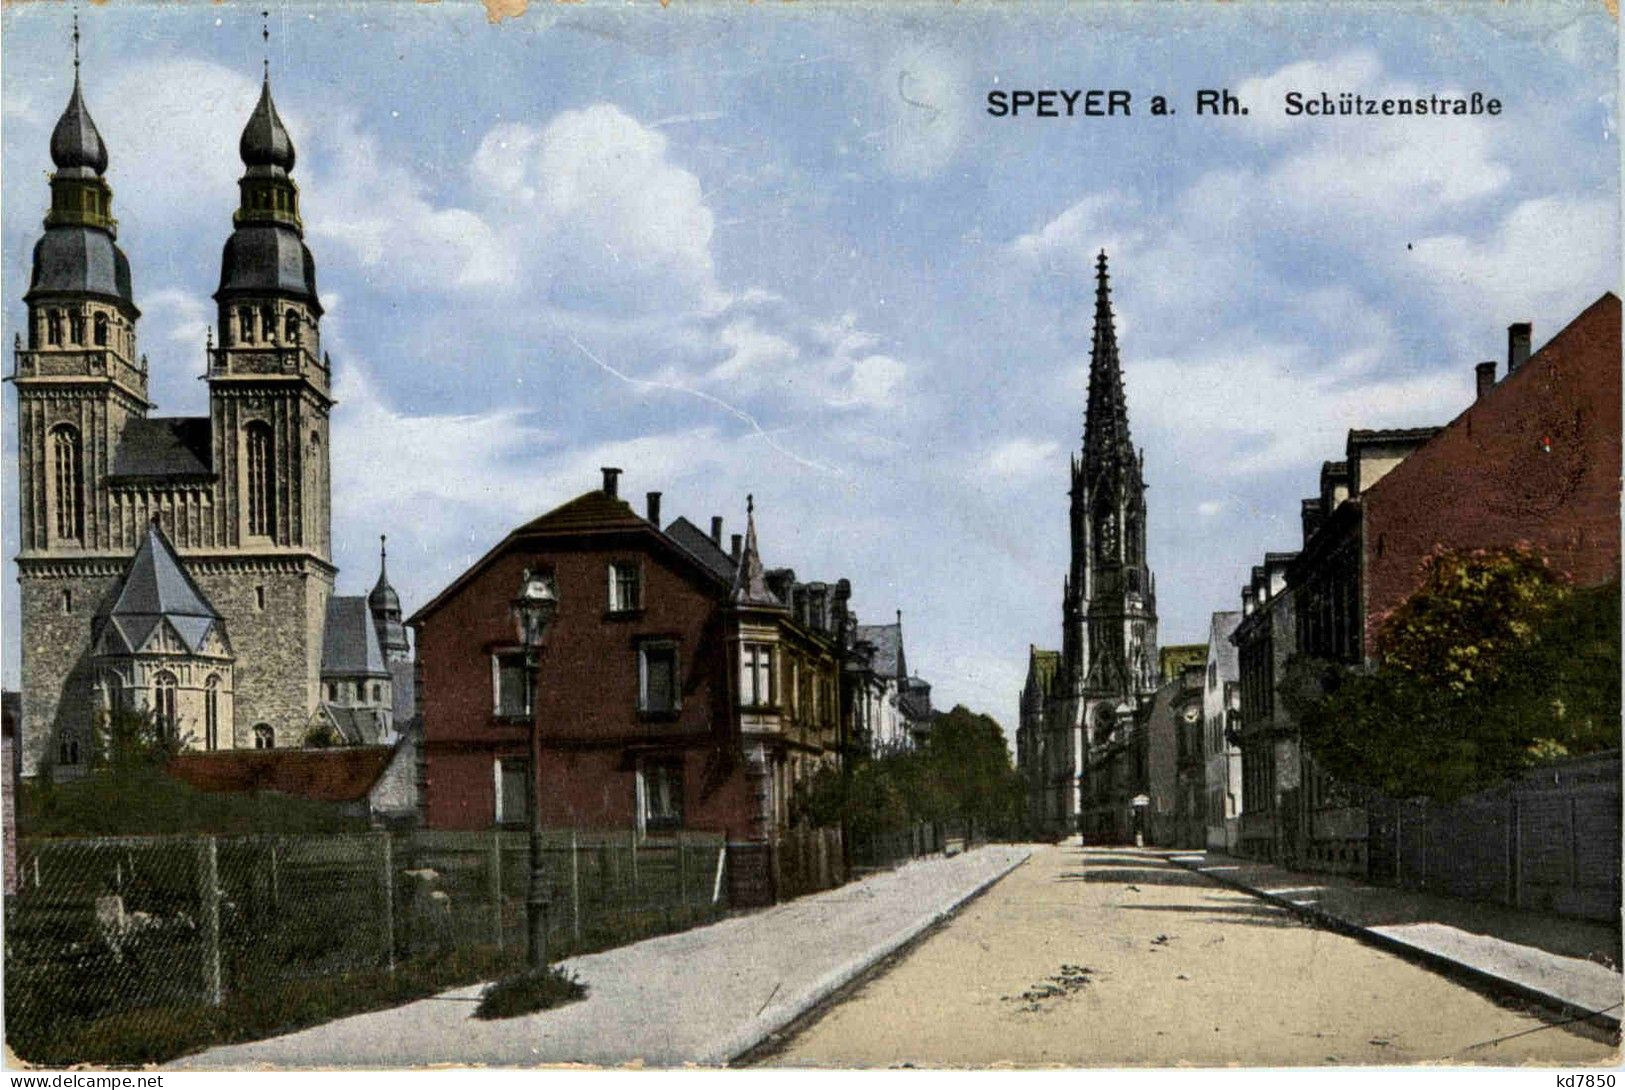 Speyer - Schützenstrasse - Speyer